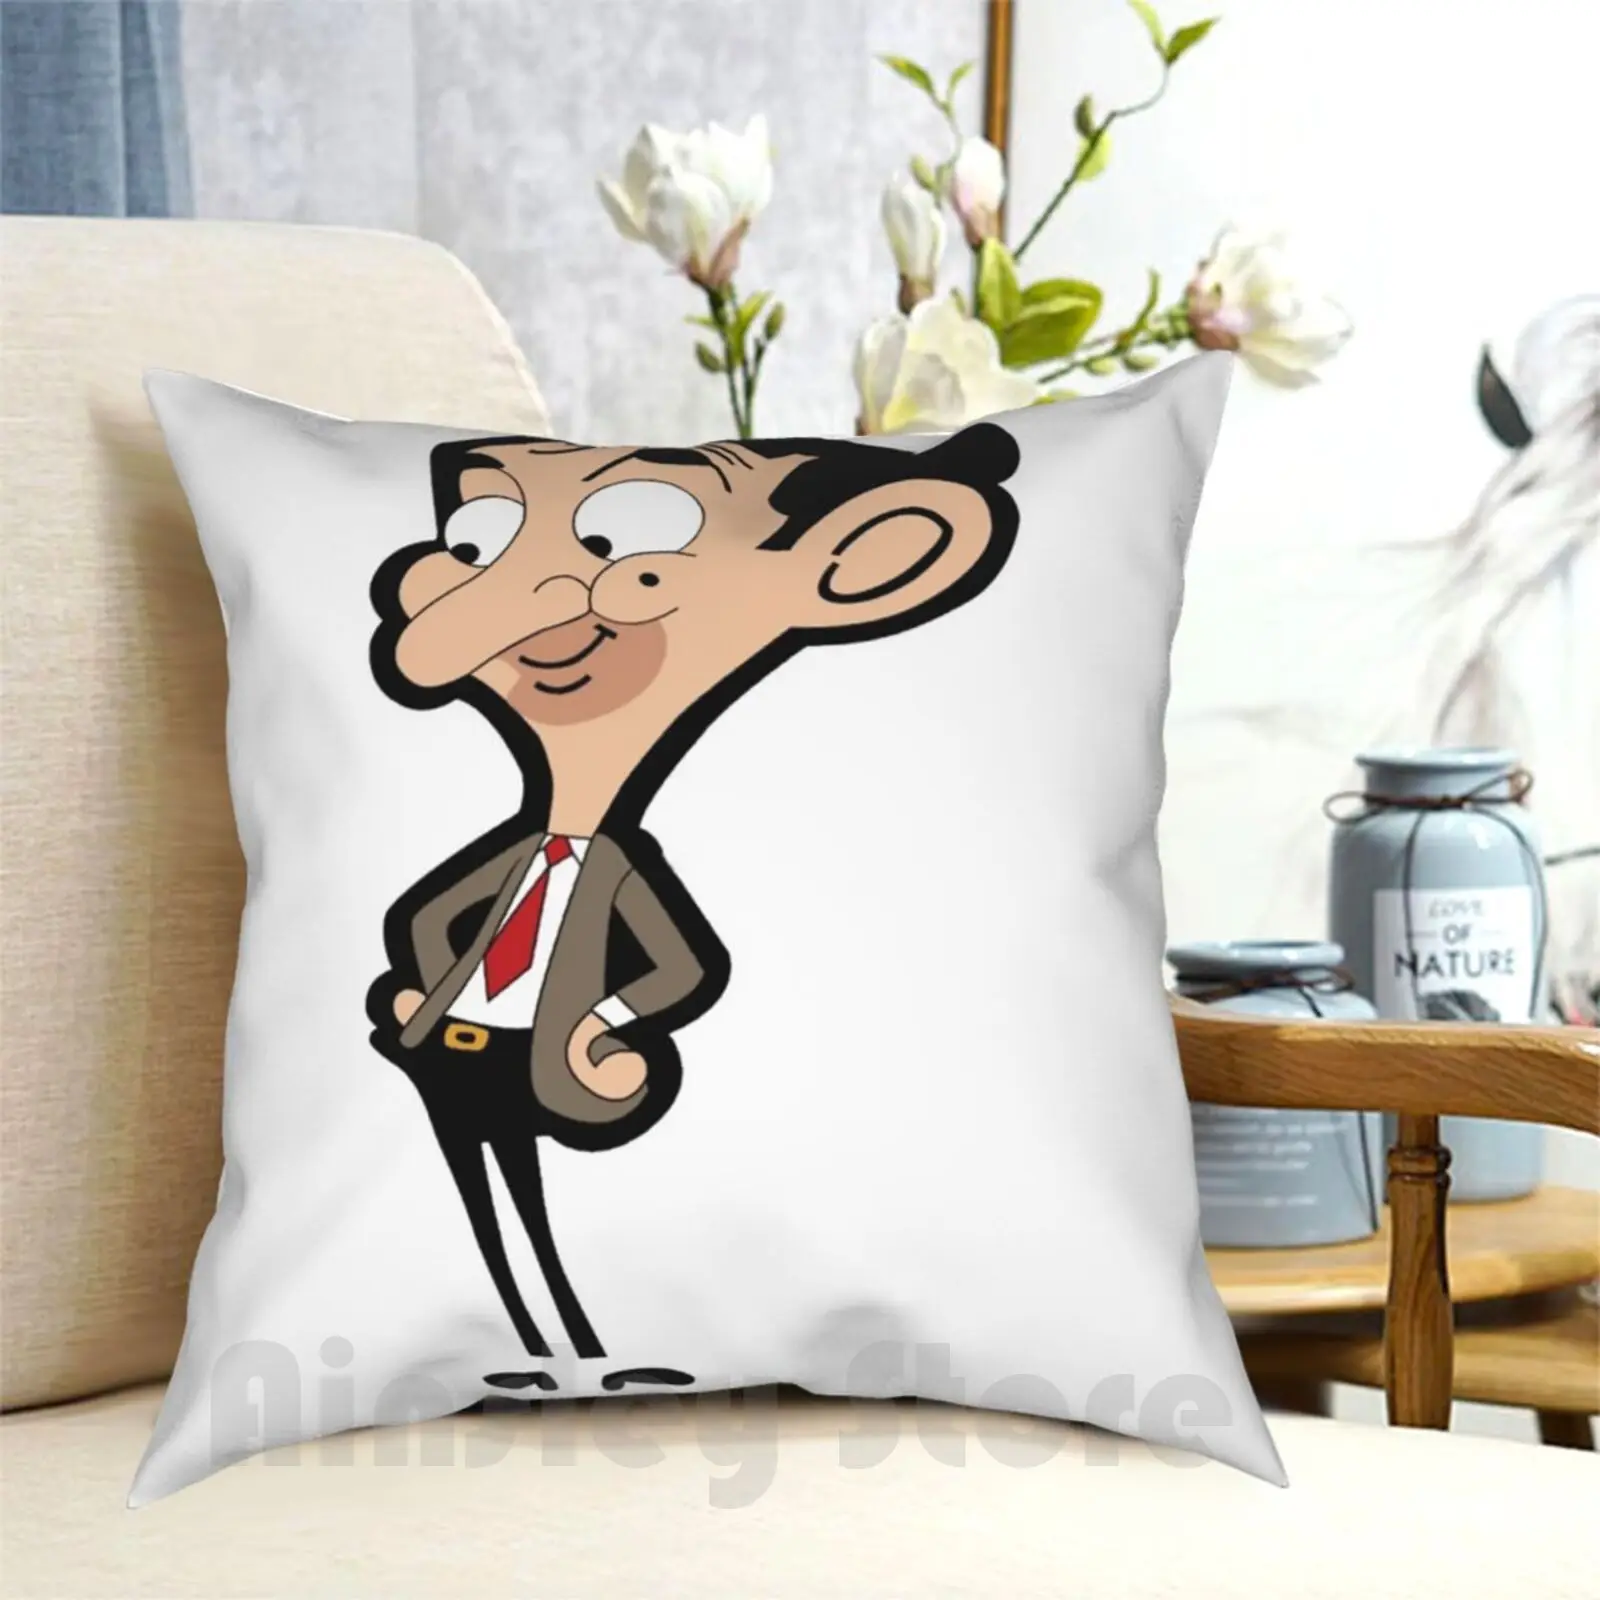 Mr.Bean Pillow Case Printed Home Soft Throw Pillow Mr Bean Bean Funny Comedy Rowan Atkinson Tv Fantastic Mr Fox Meme Wes